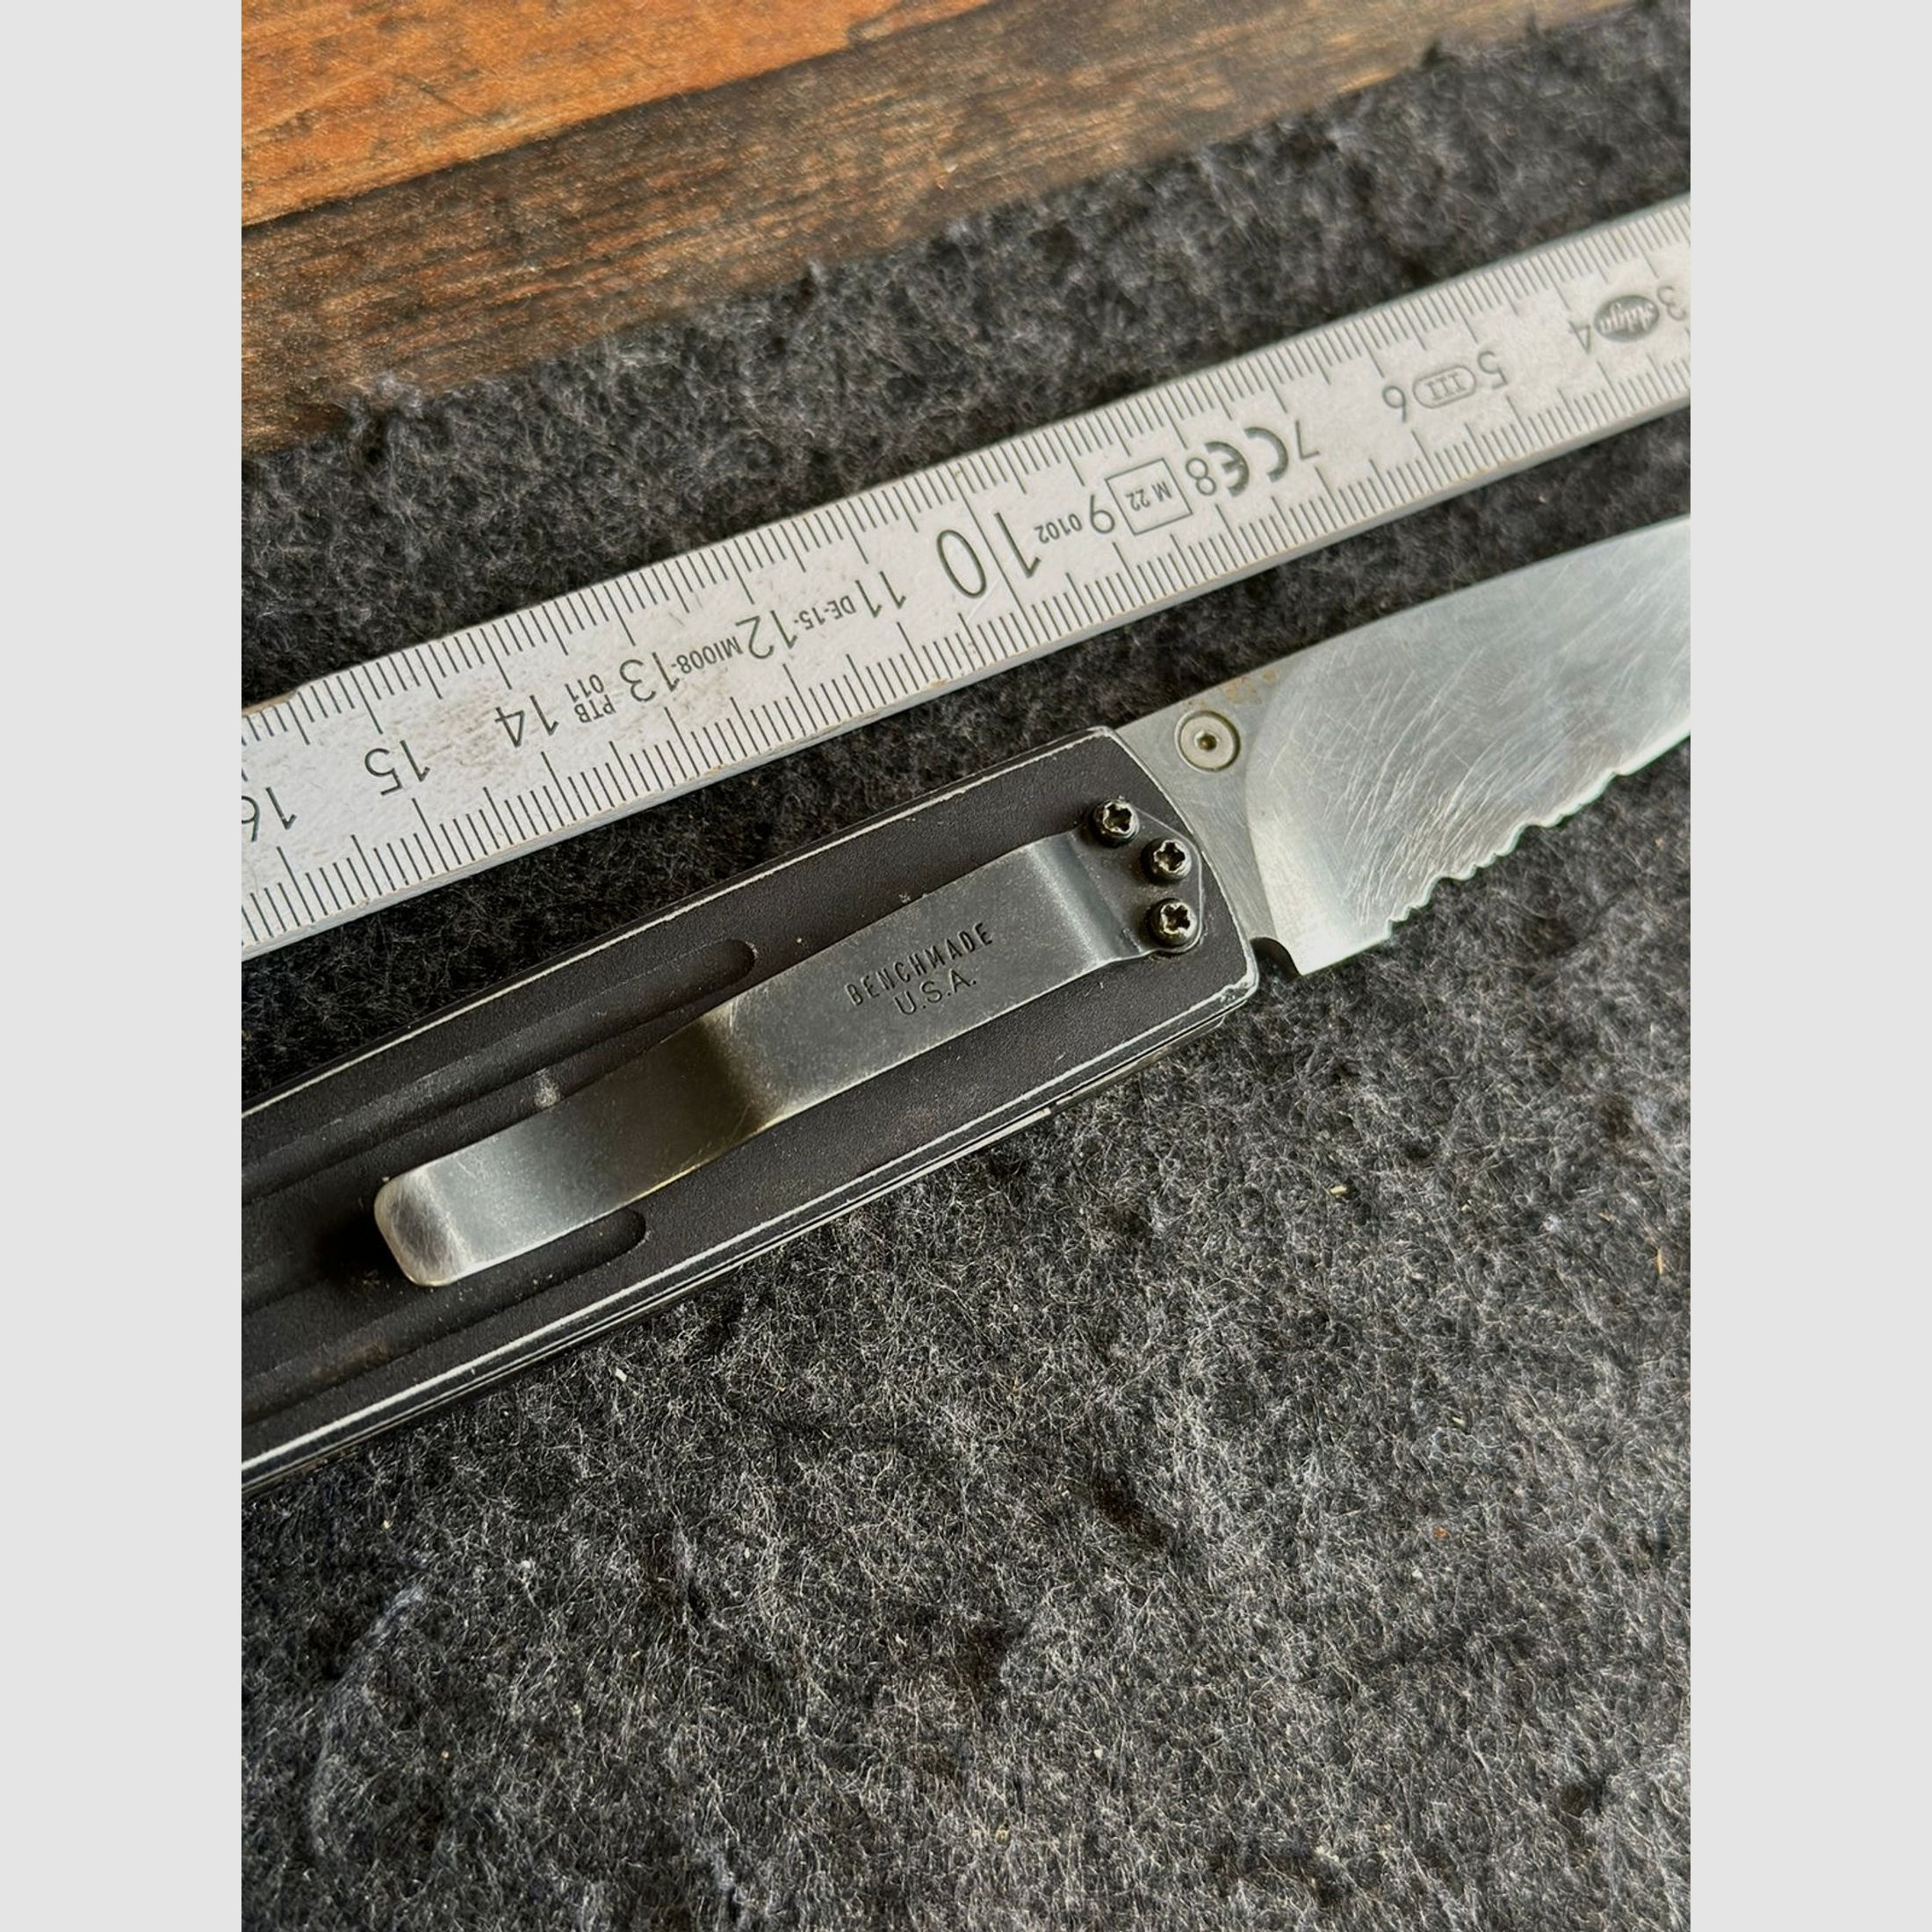 Altes Benchmade USA Messer, Klappmesser